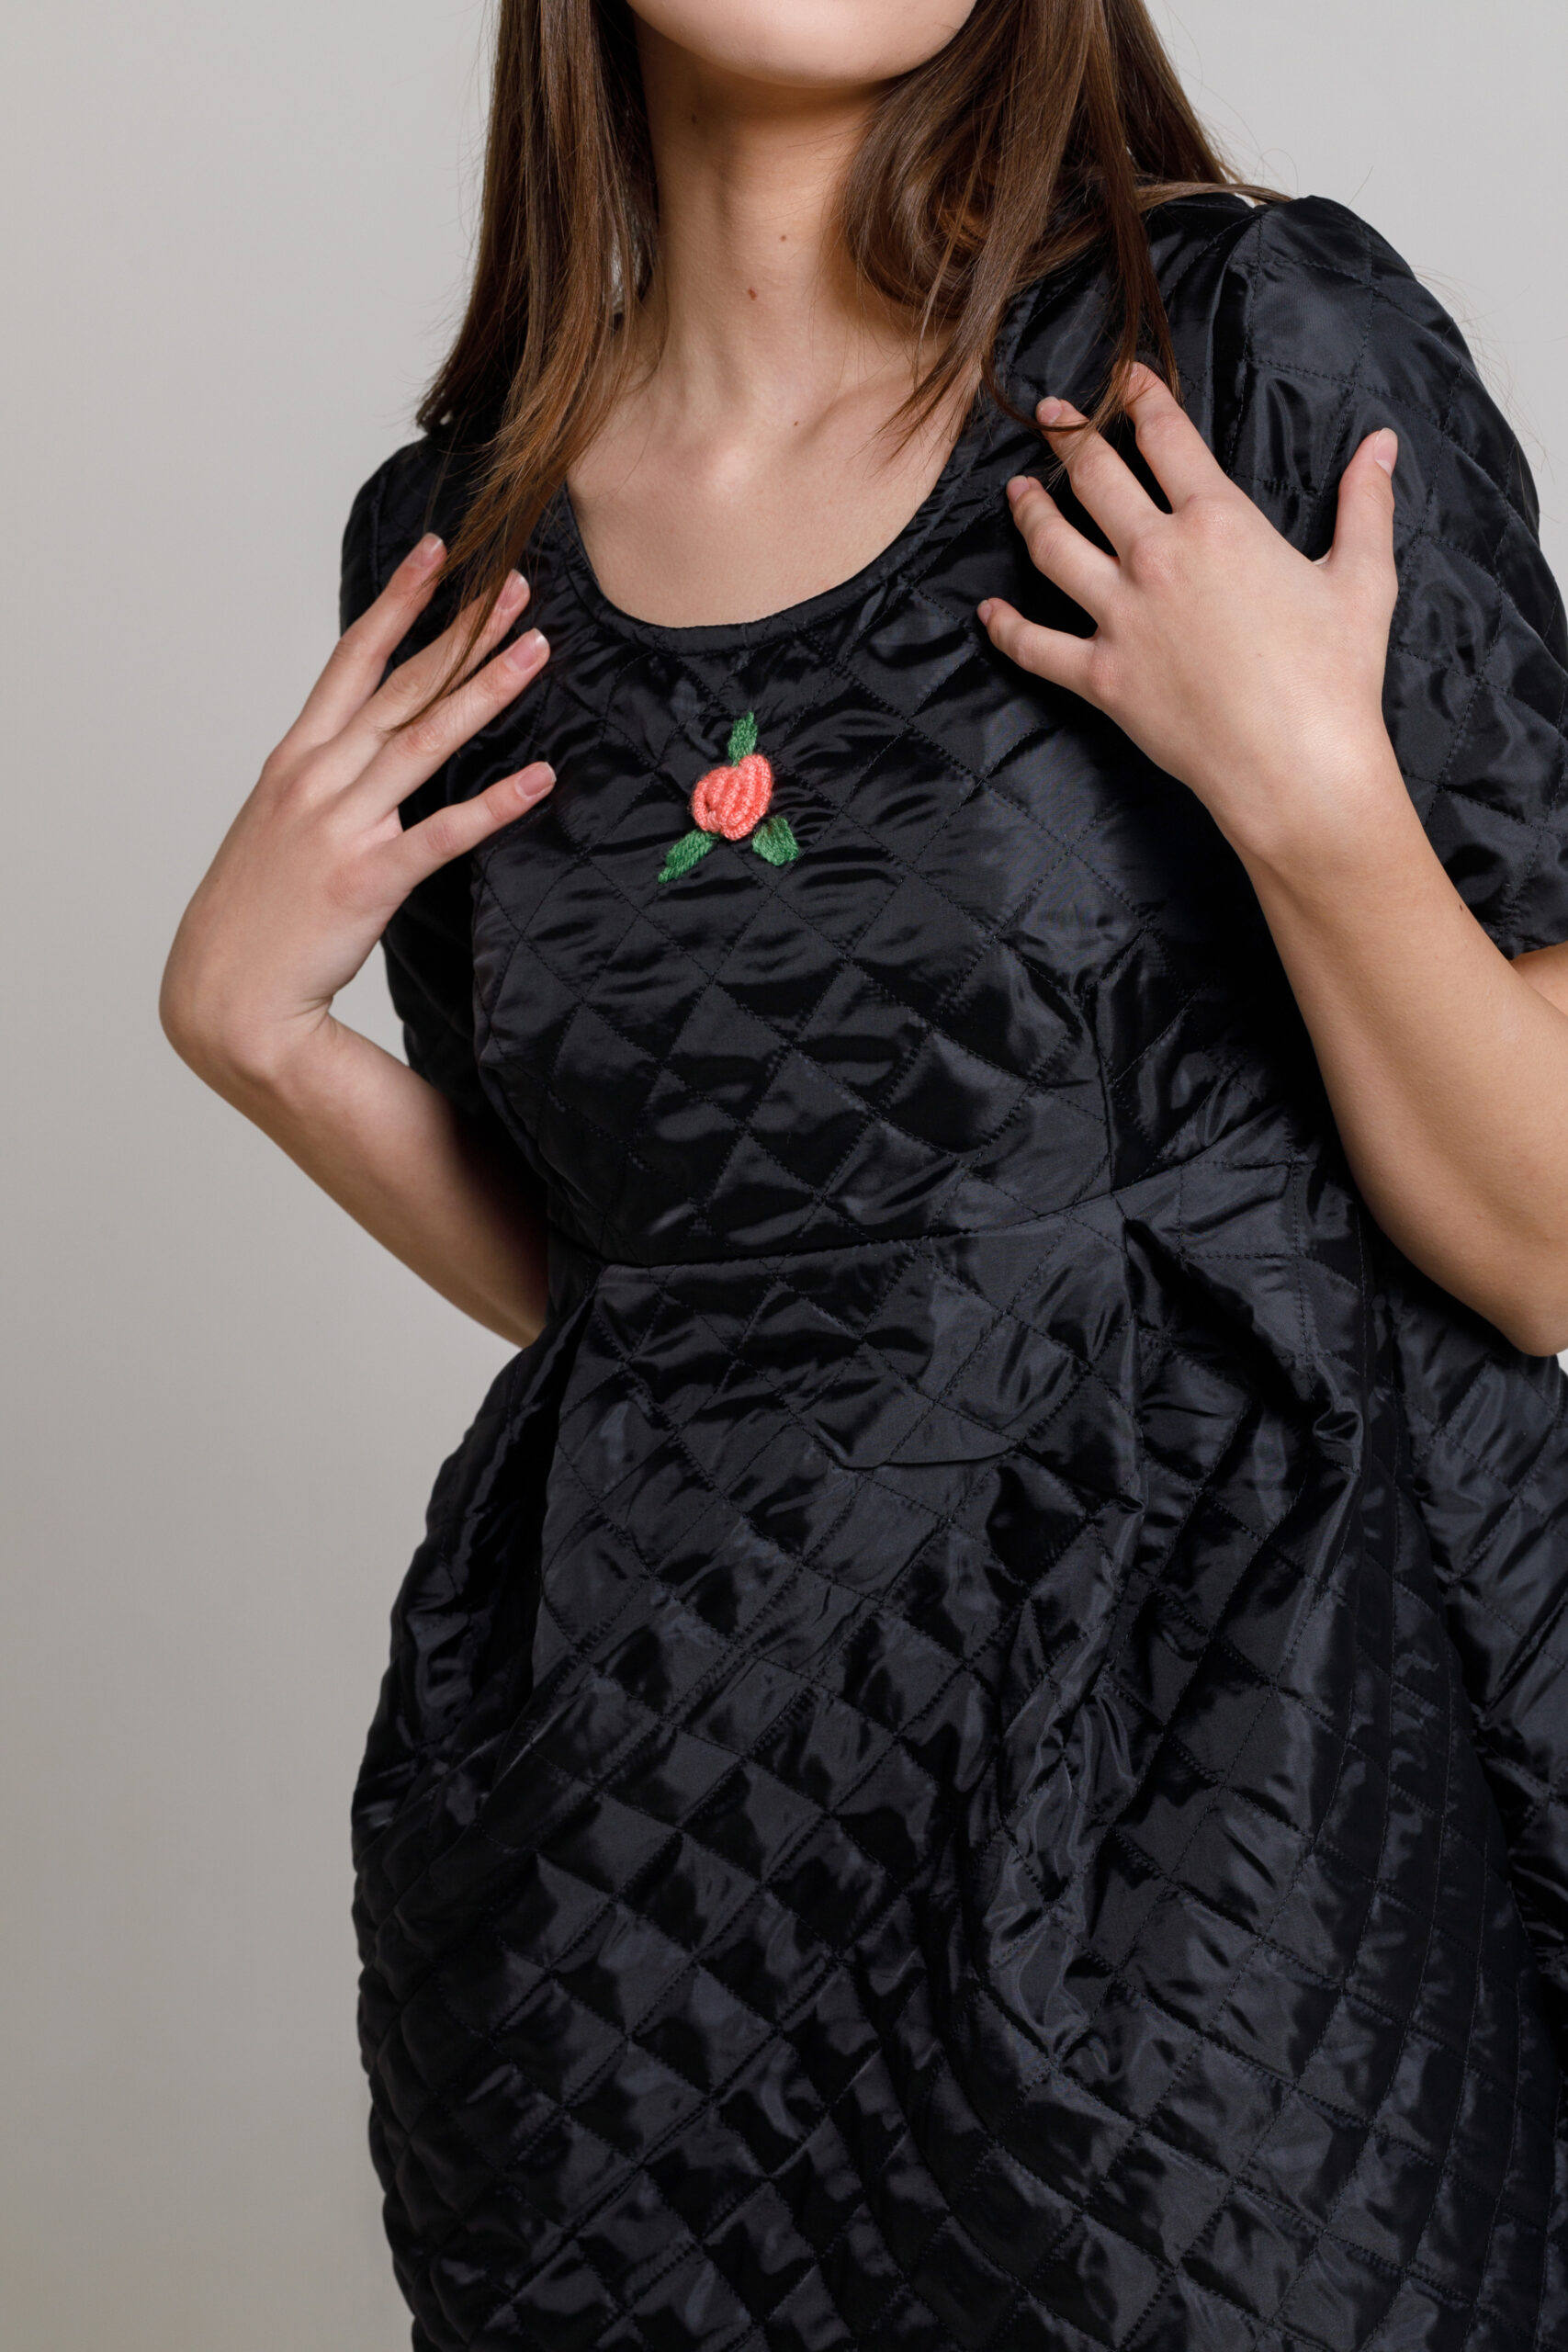 Rochie WILLA casual din matlasat negru. Materiale naturale, design unicat, cu broderie si aplicatii handmade